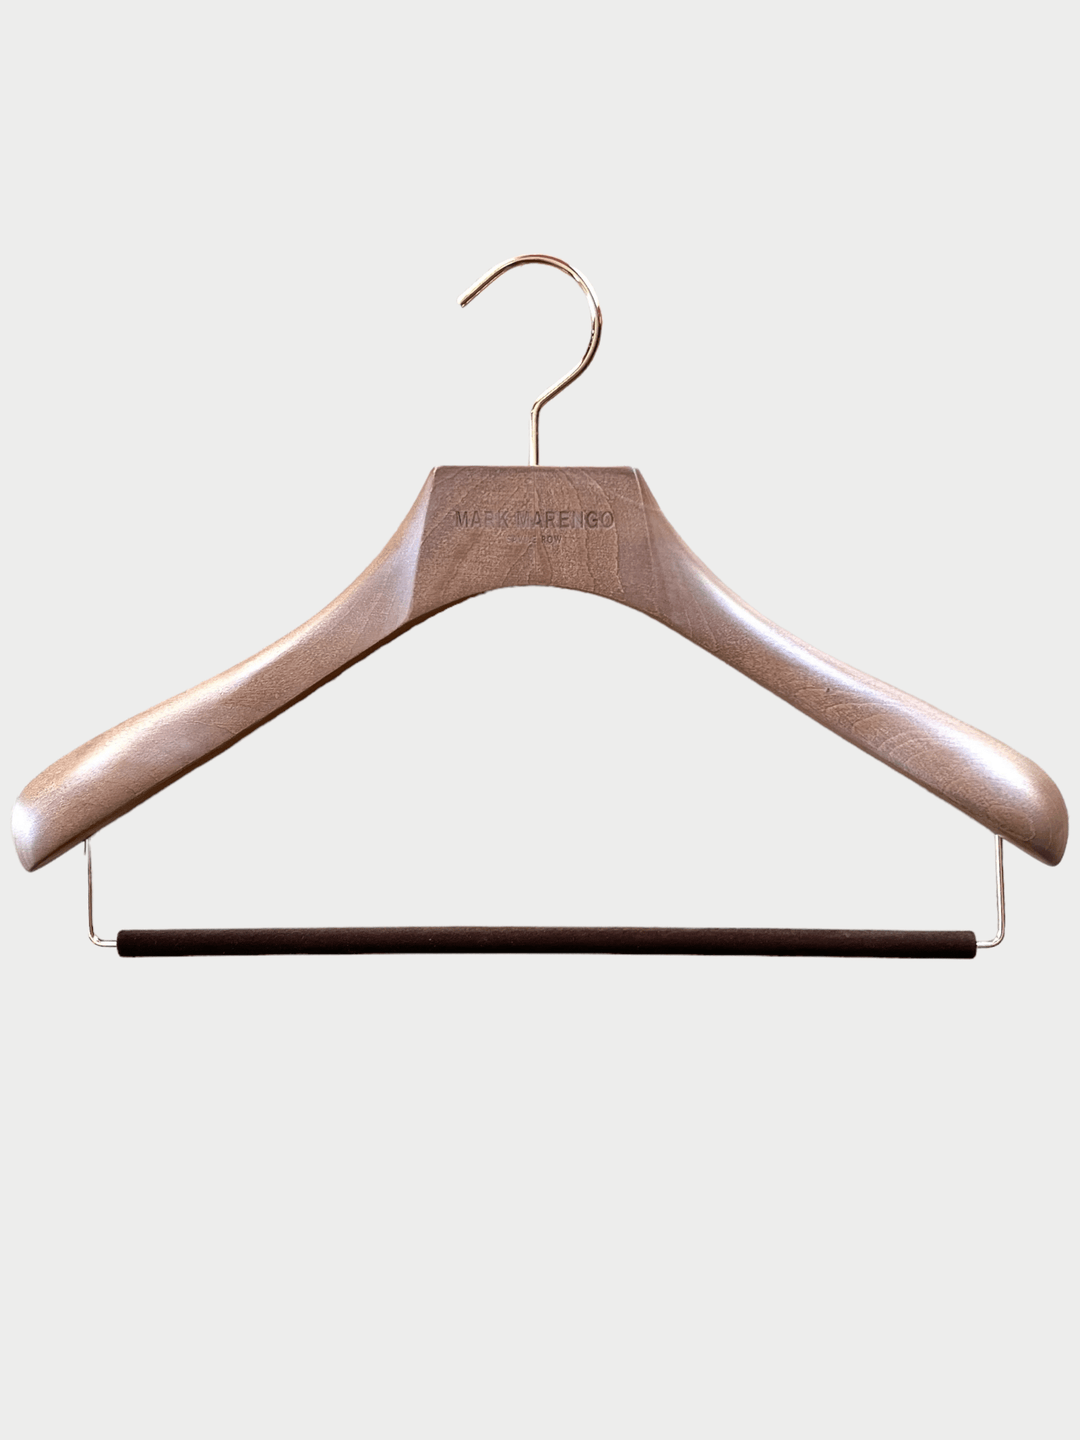 Luxury Wooden Hanger